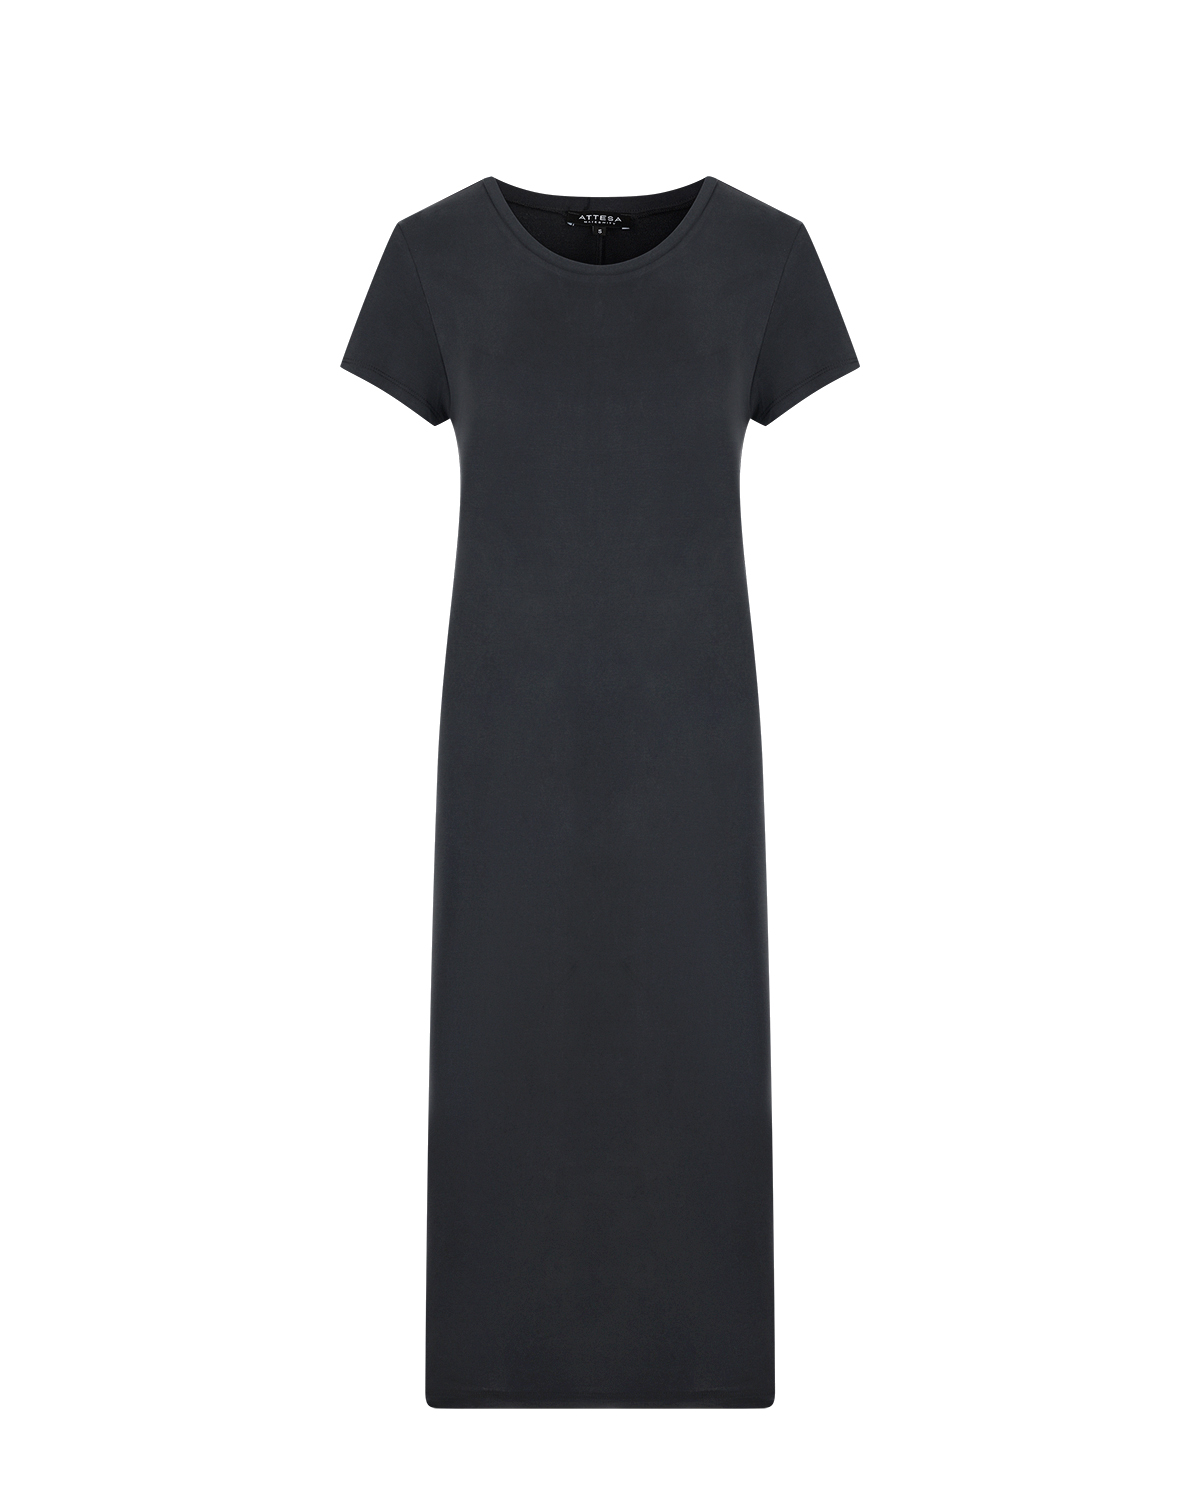 Темно-серое платье с короткими рукавами Attesa, размер 38, цвет серый - фото 1